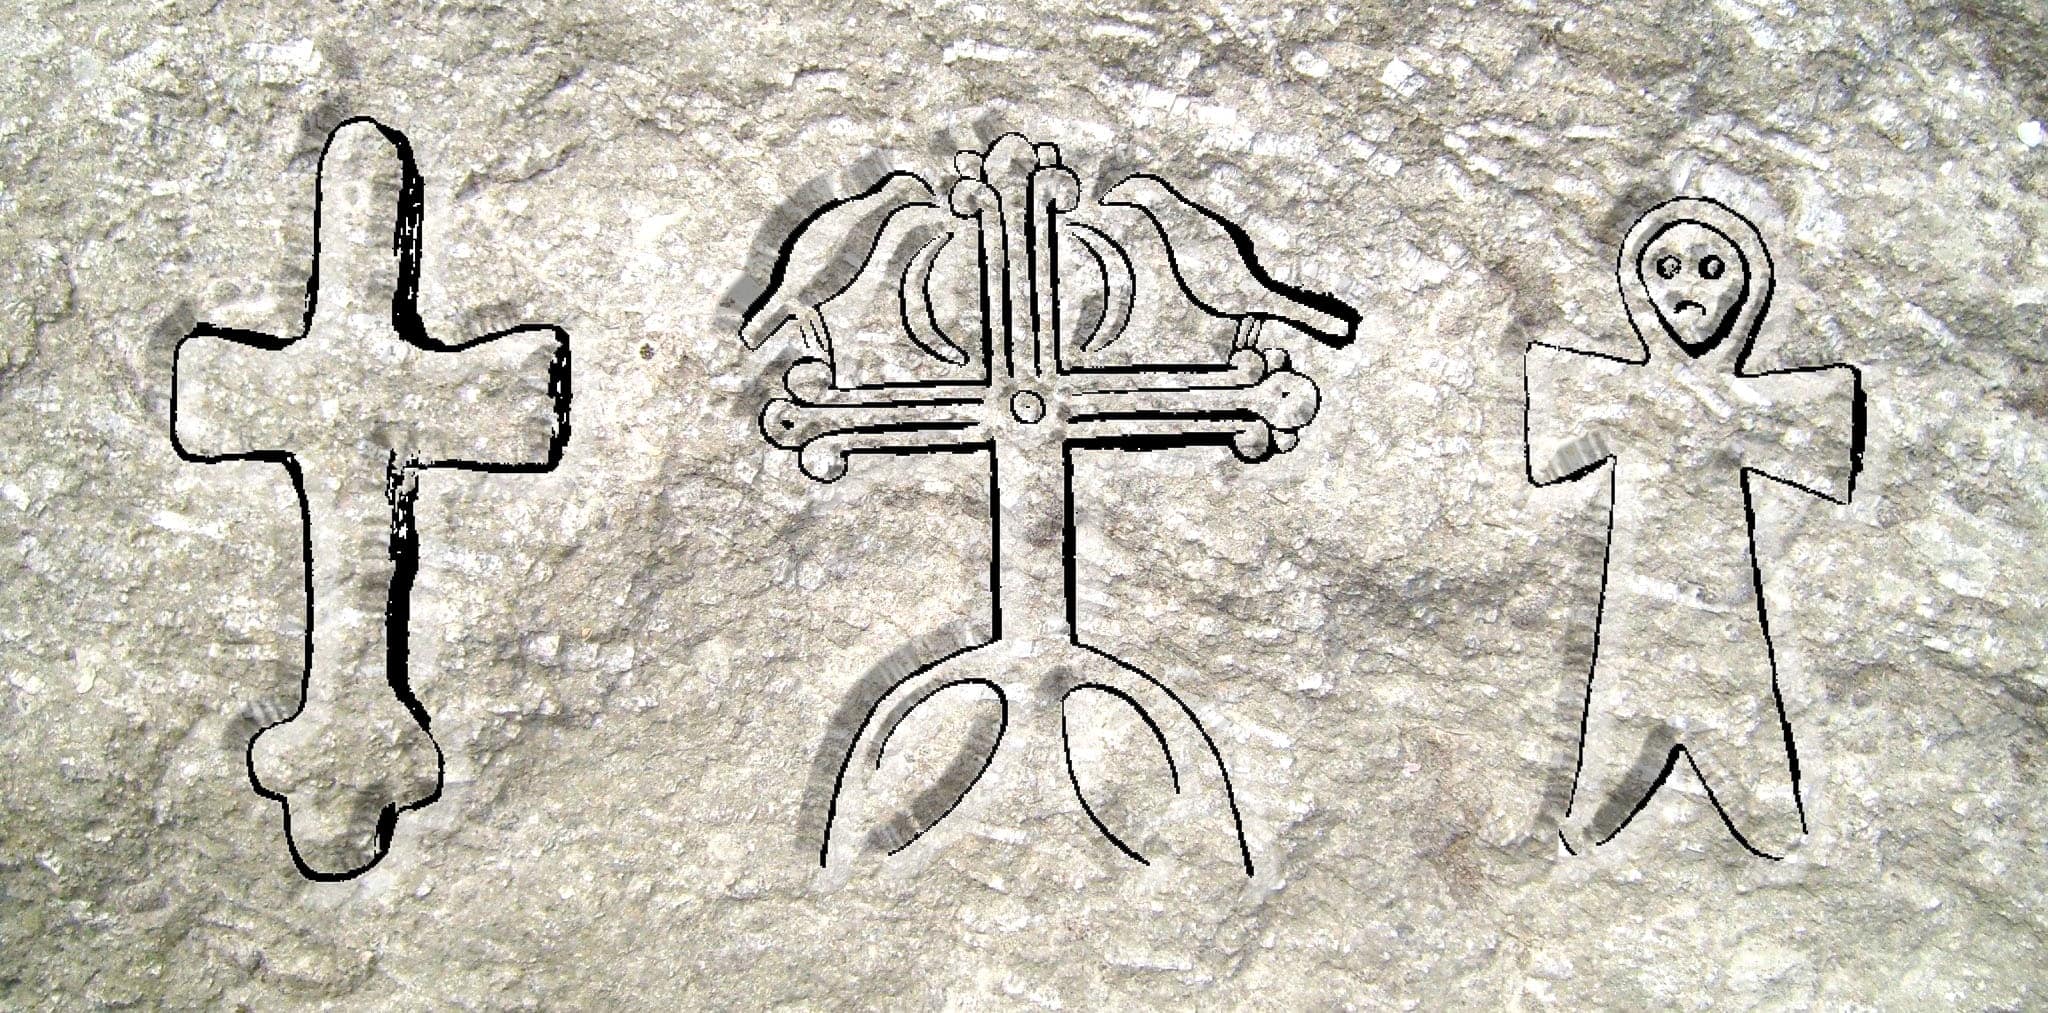 Odabrani simboli križa na stećcima: jednostavni križ bez tijela u Čerinu, Mostar – stilizirani svjetlosni križ s pticama i polumjesecima u Bjeloj Rudini, Bileća – antropomorfni križ u Milavićima, Stolac